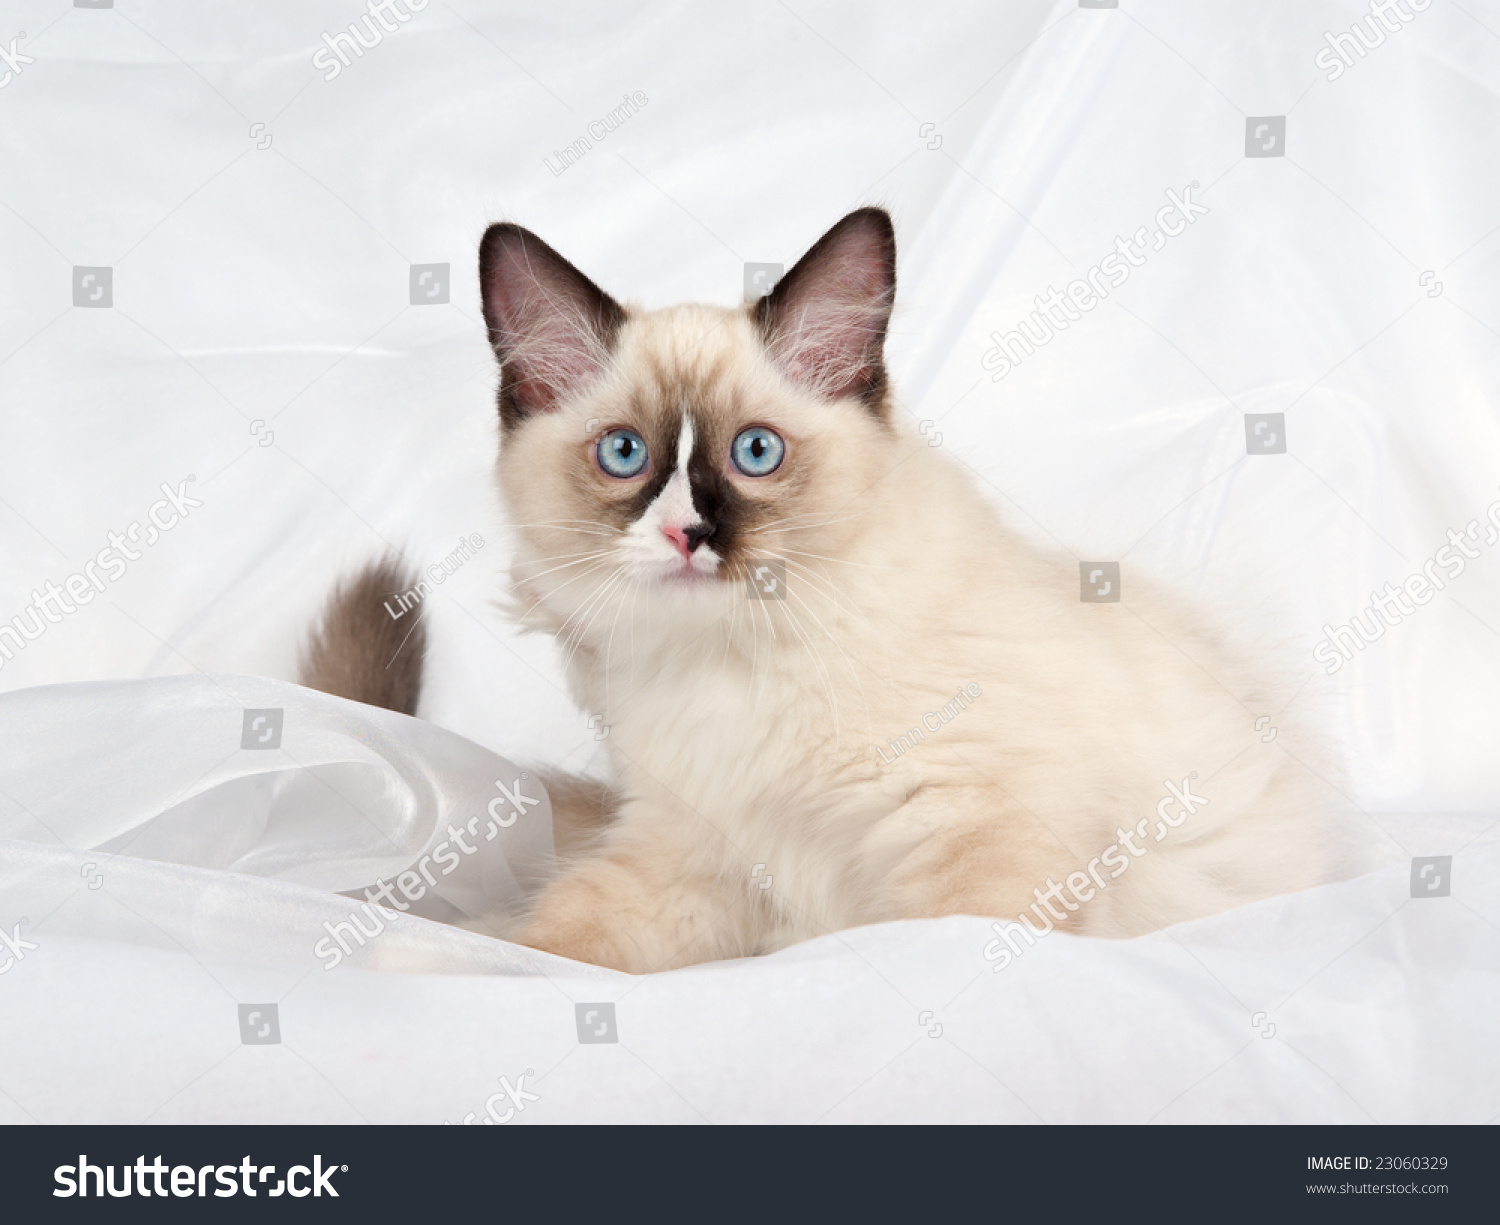 Ragdoll Kitten Lying Down On White Stock Photo 23060329 - Shutterstock